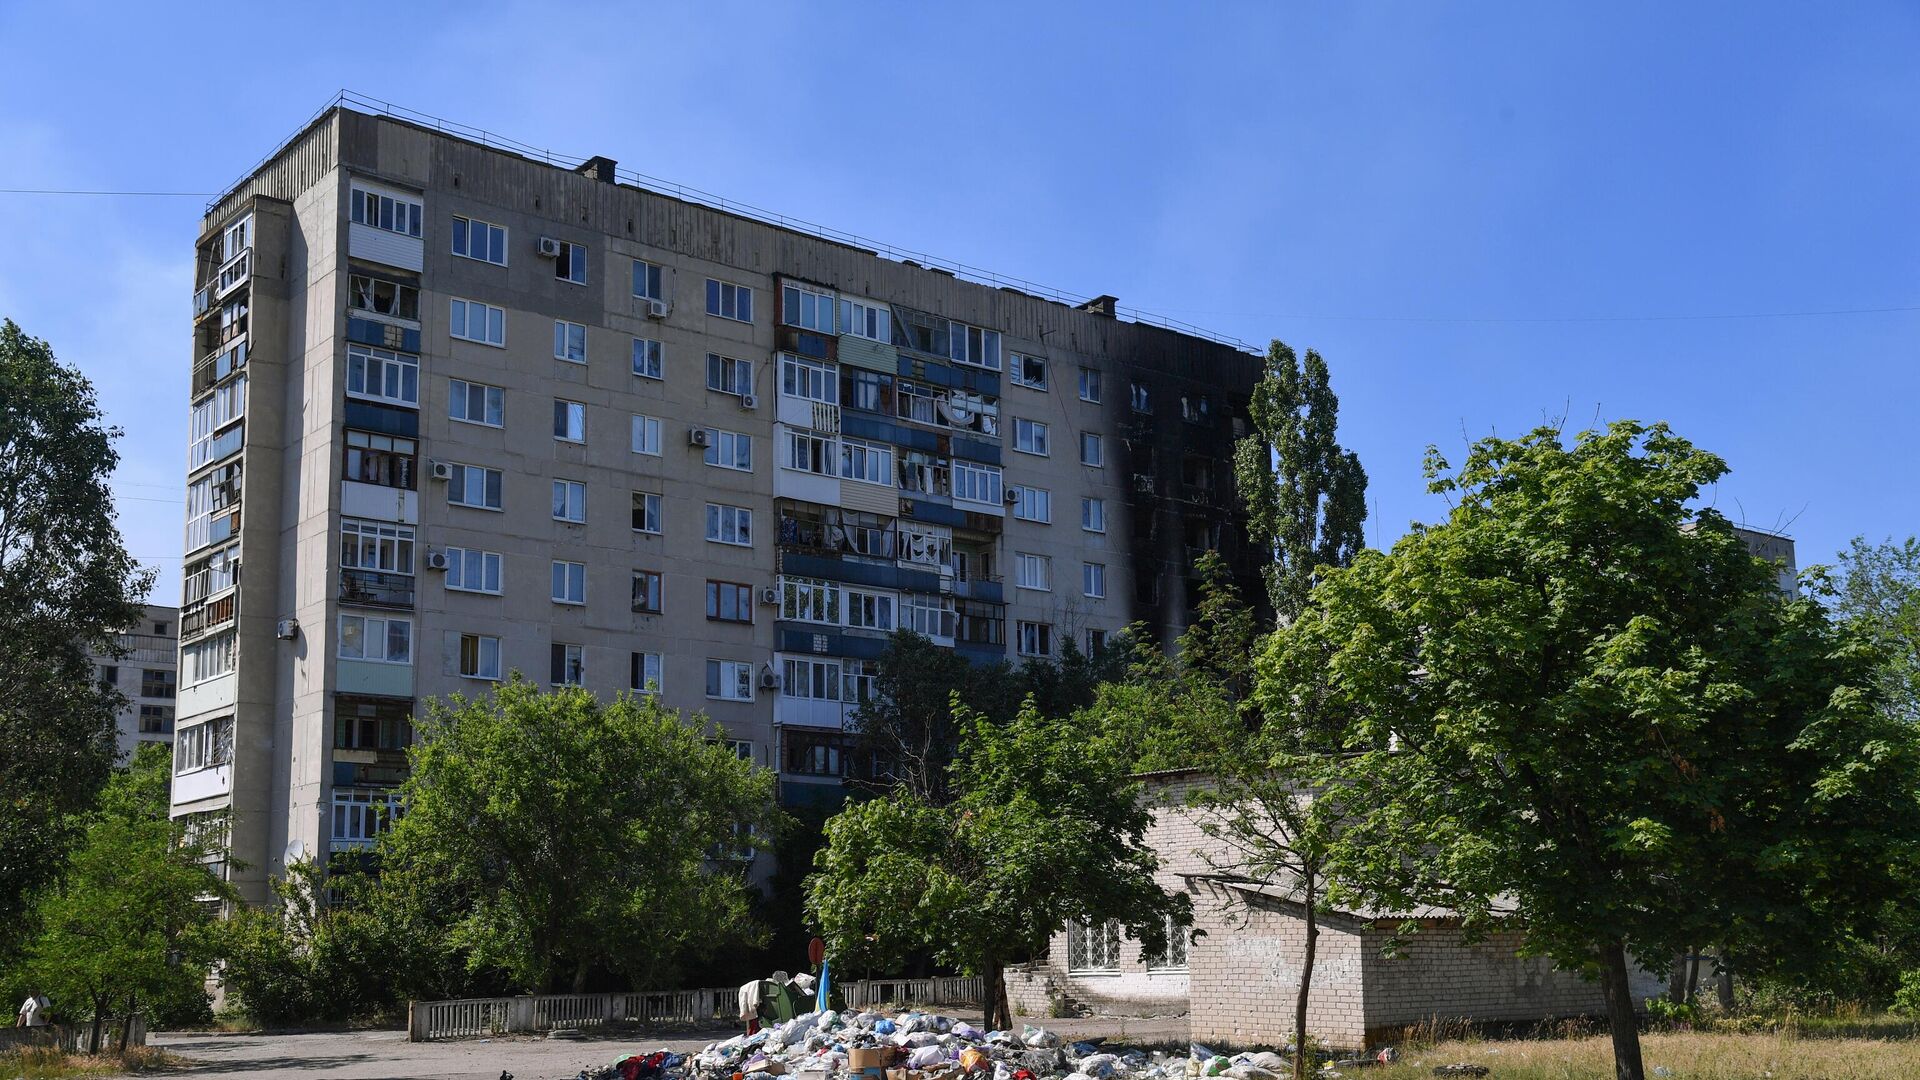 Жилой многоэтажный дом со следами разрушений в Северодонецке - РИА Новости, 1920, 10.06.2022